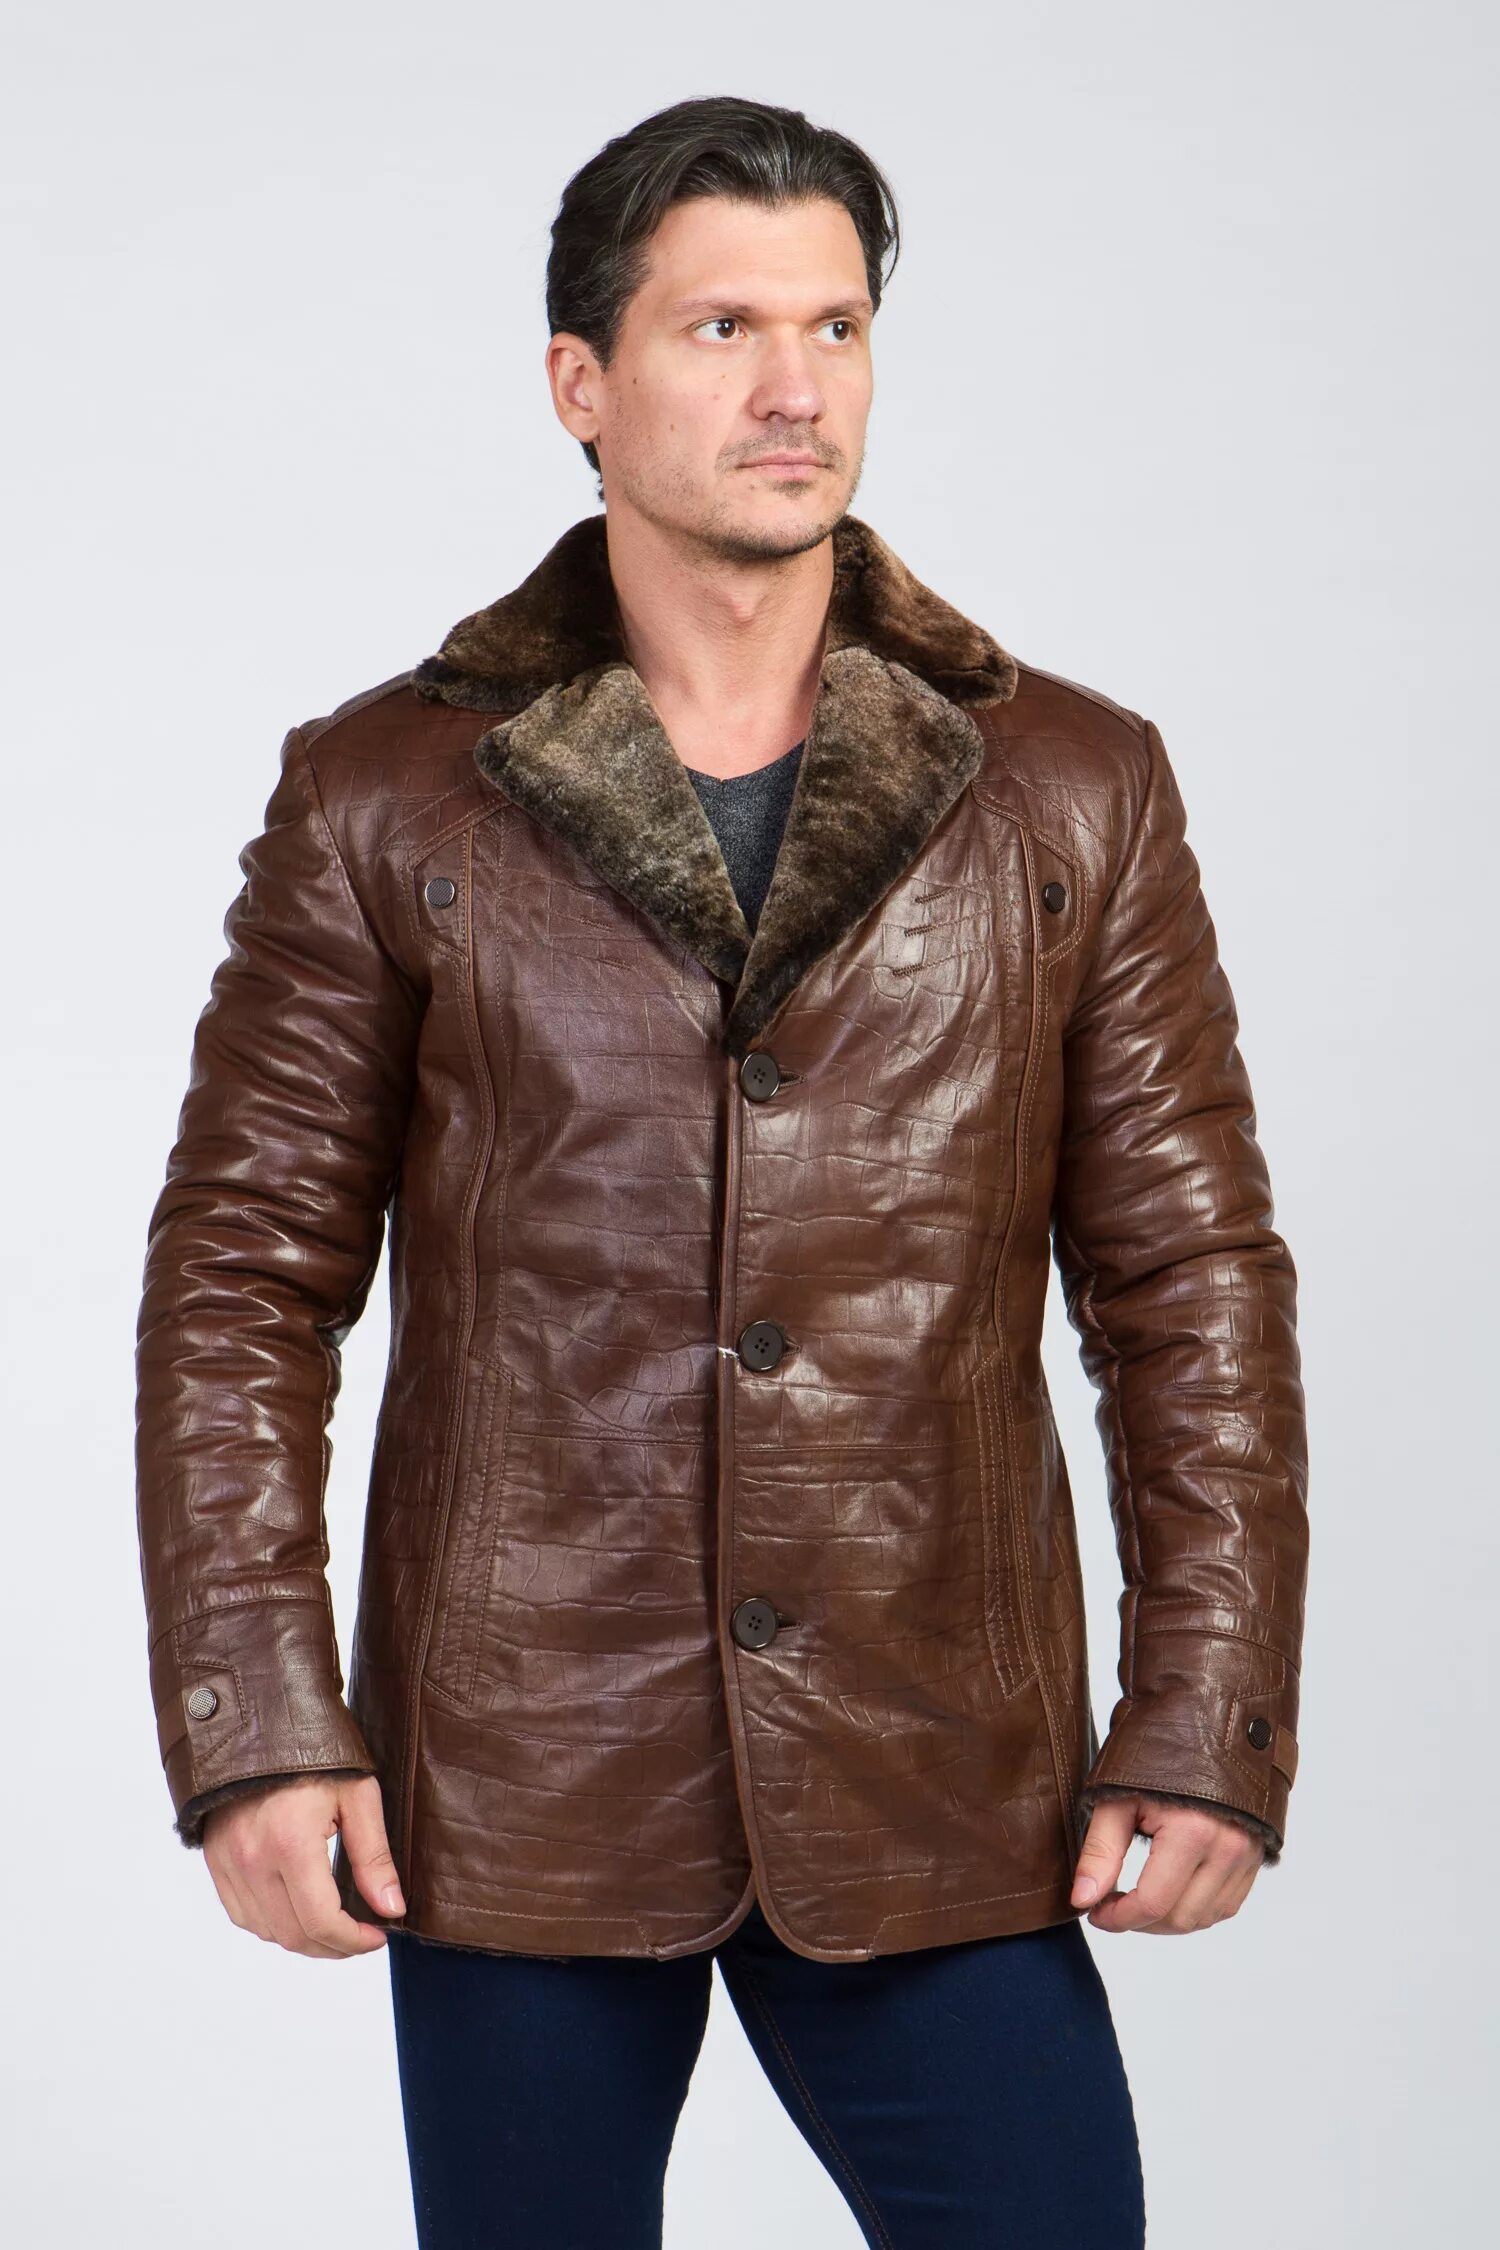 Коричневая кожаная куртка с мехом мужская. Кожаная куртка мужская зимняя коричневая.